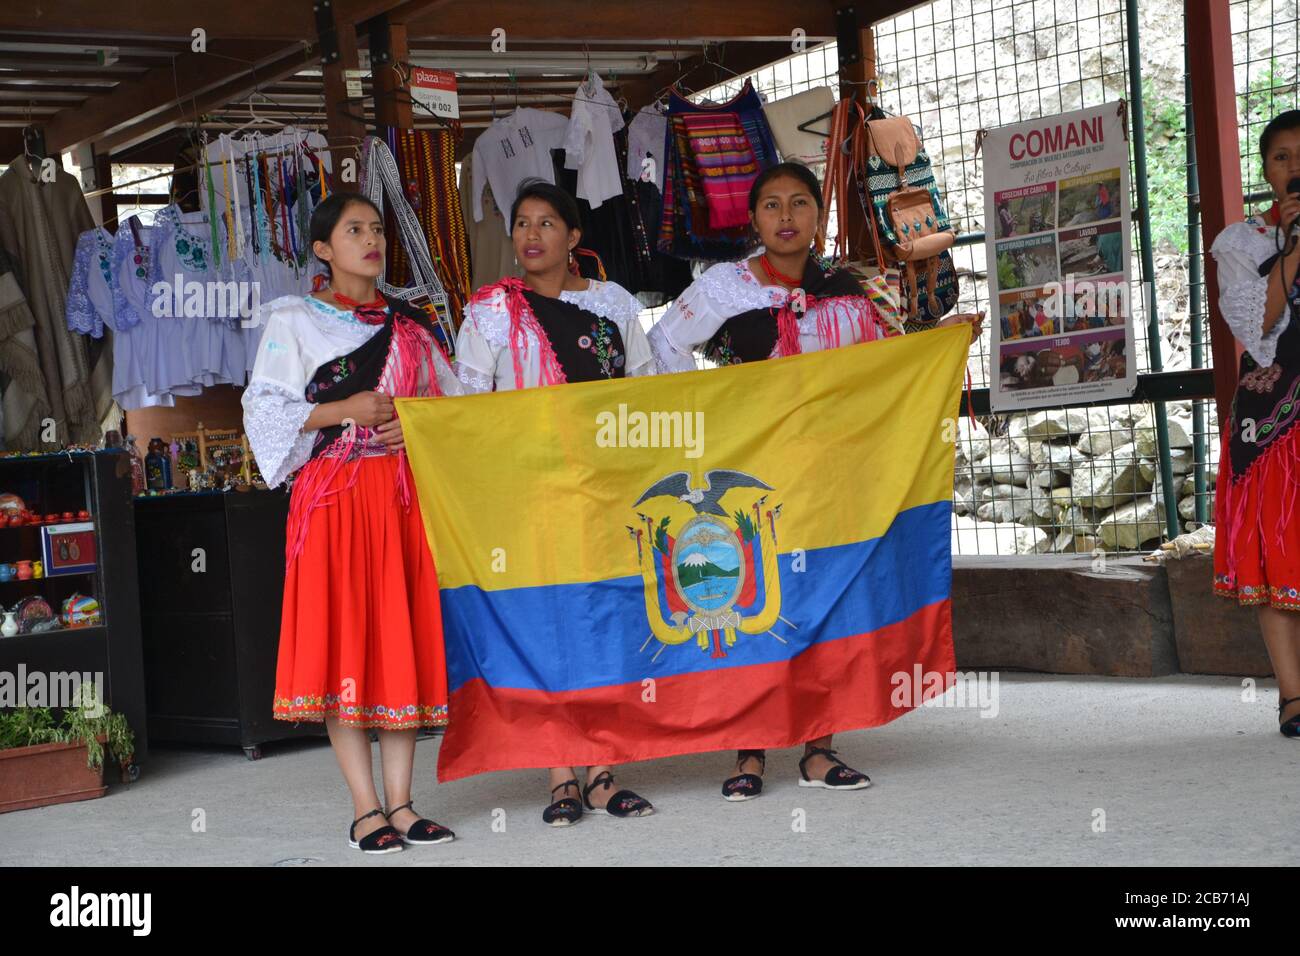 Les autochtones équatoriens en vêtements traditionnels ont le drapeau national. Équateur. Banque D'Images